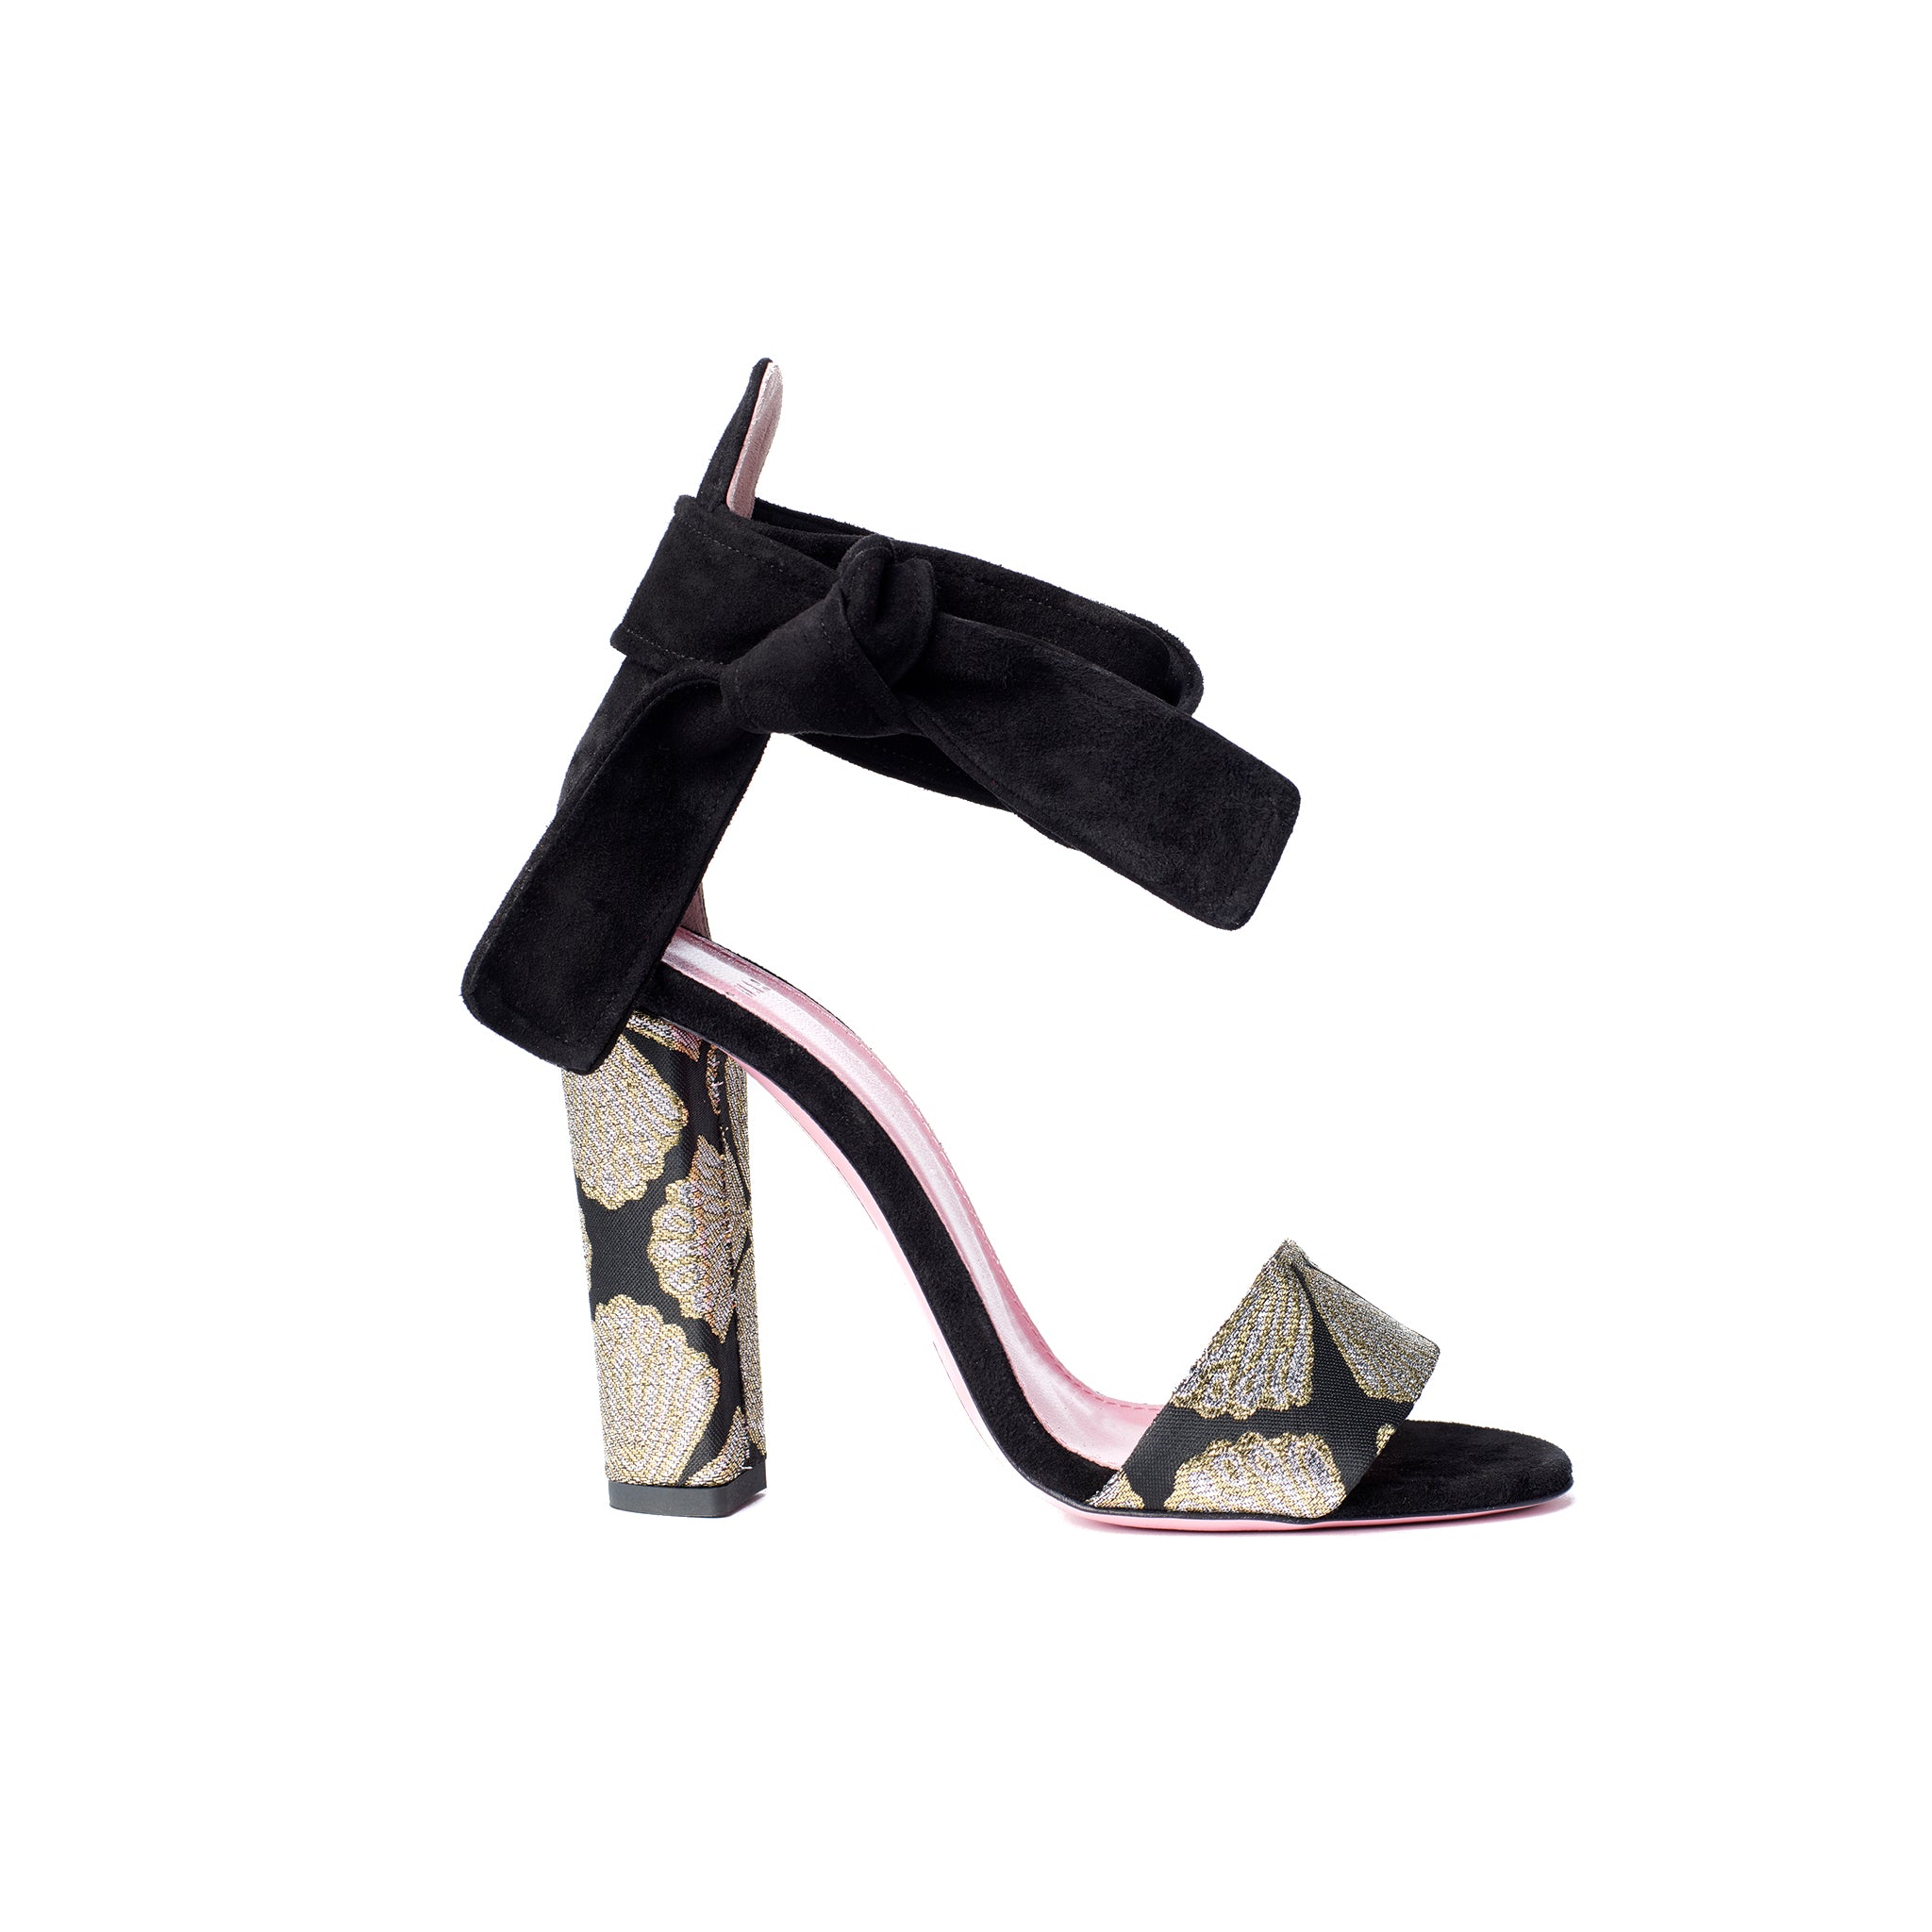 Phare Ankle tie block heel with metallic brocade heel and black suede